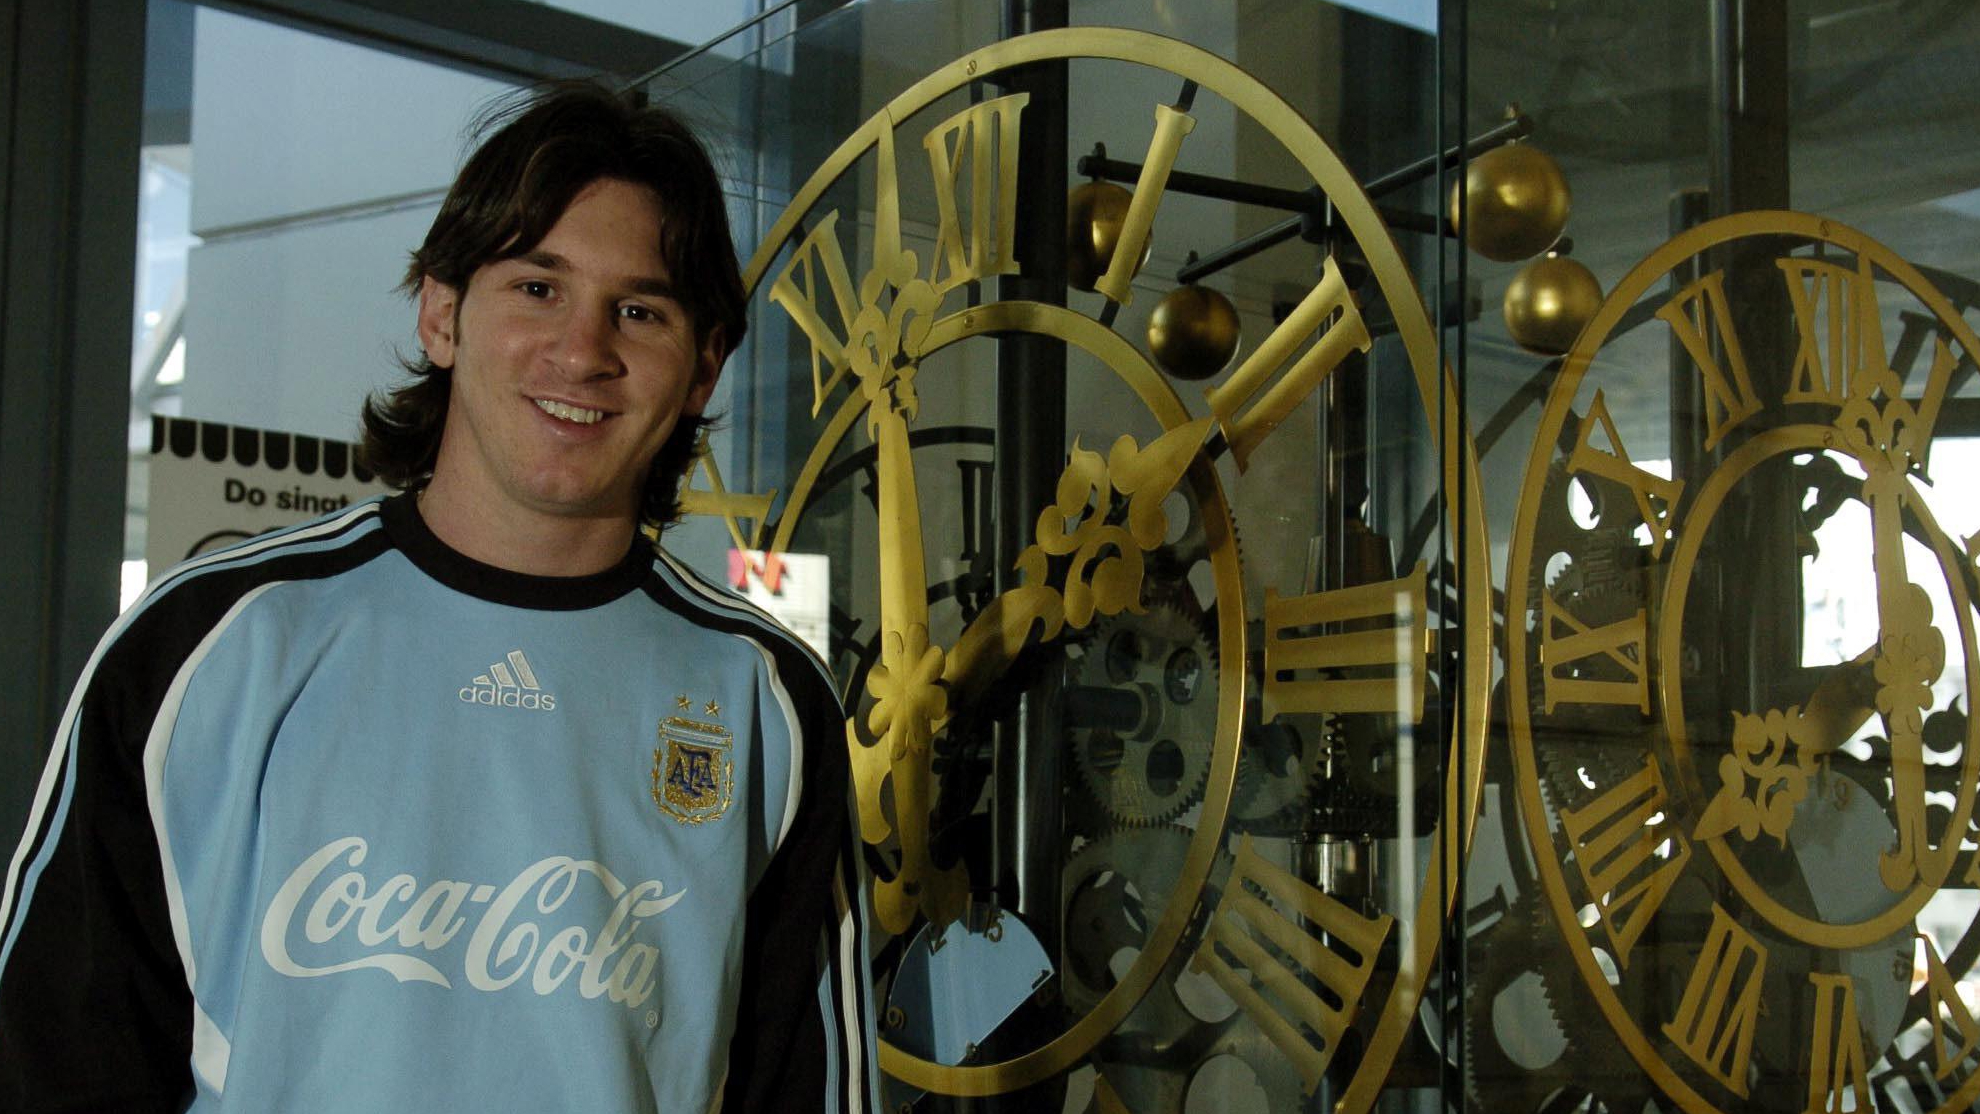 La historia del fichaje de Messi por Argentina: Ponlo a velocidad normal